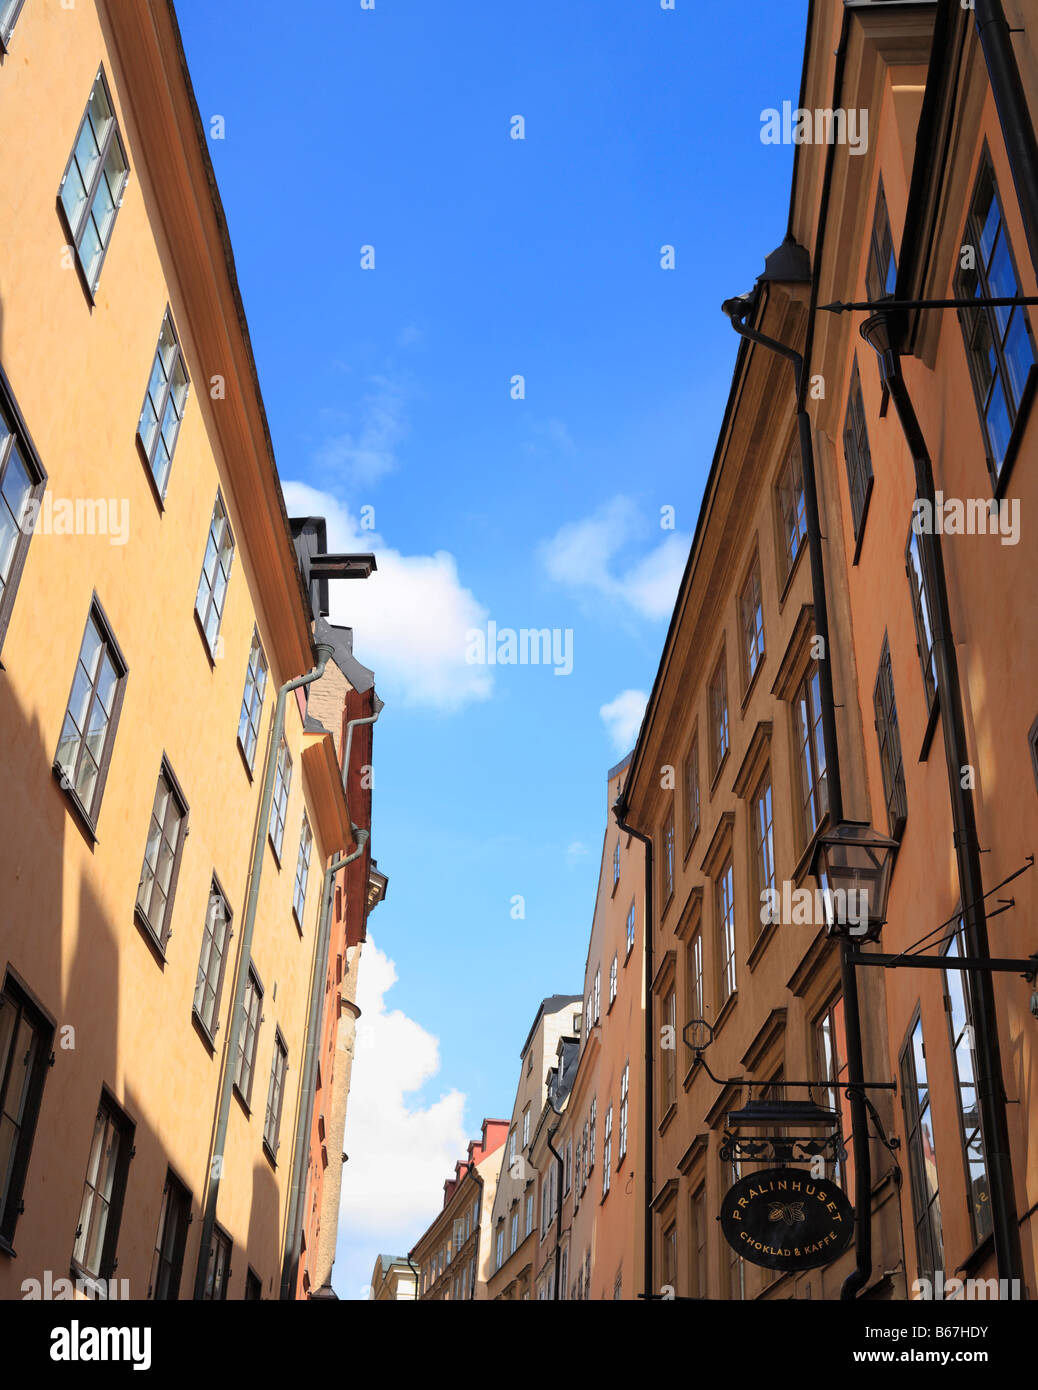 Vieille maison, rue, Gamla Stan, la vieille ville, Stockholm, Suède Banque D'Images